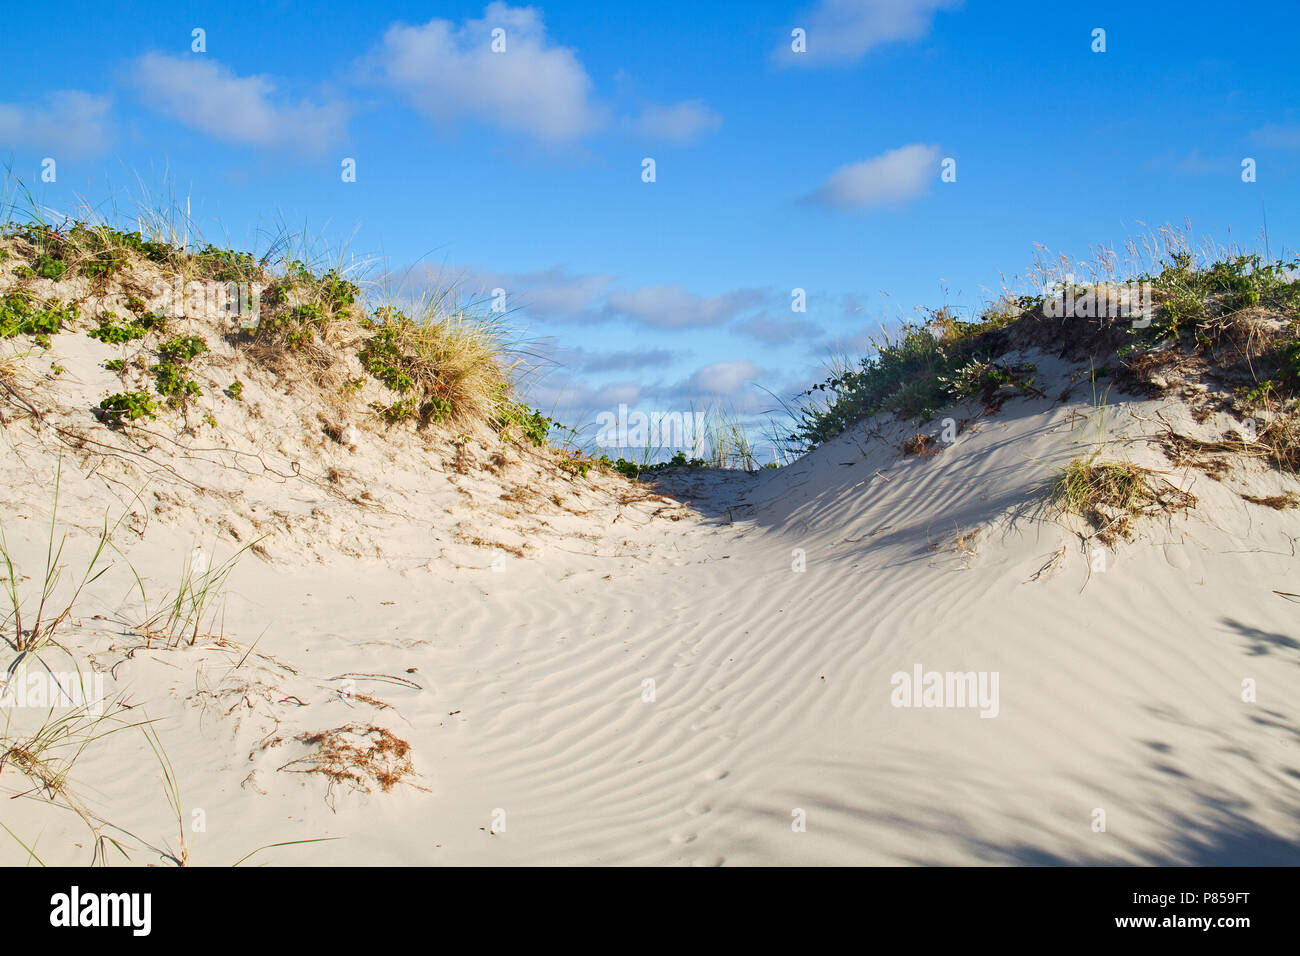 Dune cresciuto con Marram erba e Dewberry sotto un cielo blu, impronte di un animale, probabilmente una volpe, nella sabbia ondulata Foto Stock